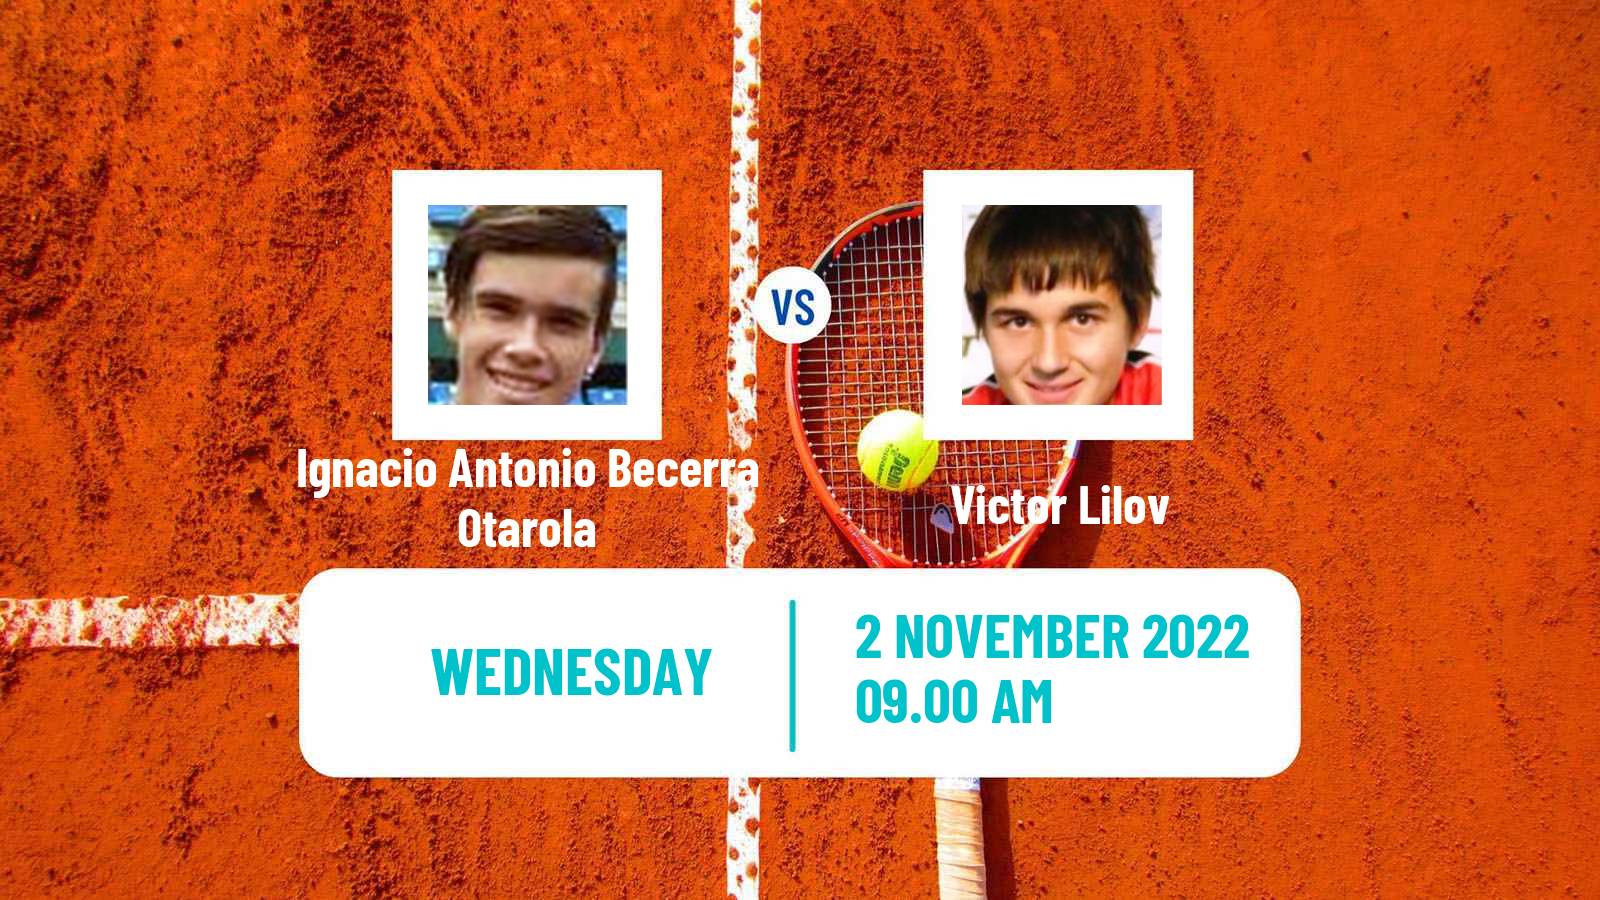 Tennis ITF Tournaments Ignacio Antonio Becerra Otarola - Victor Lilov